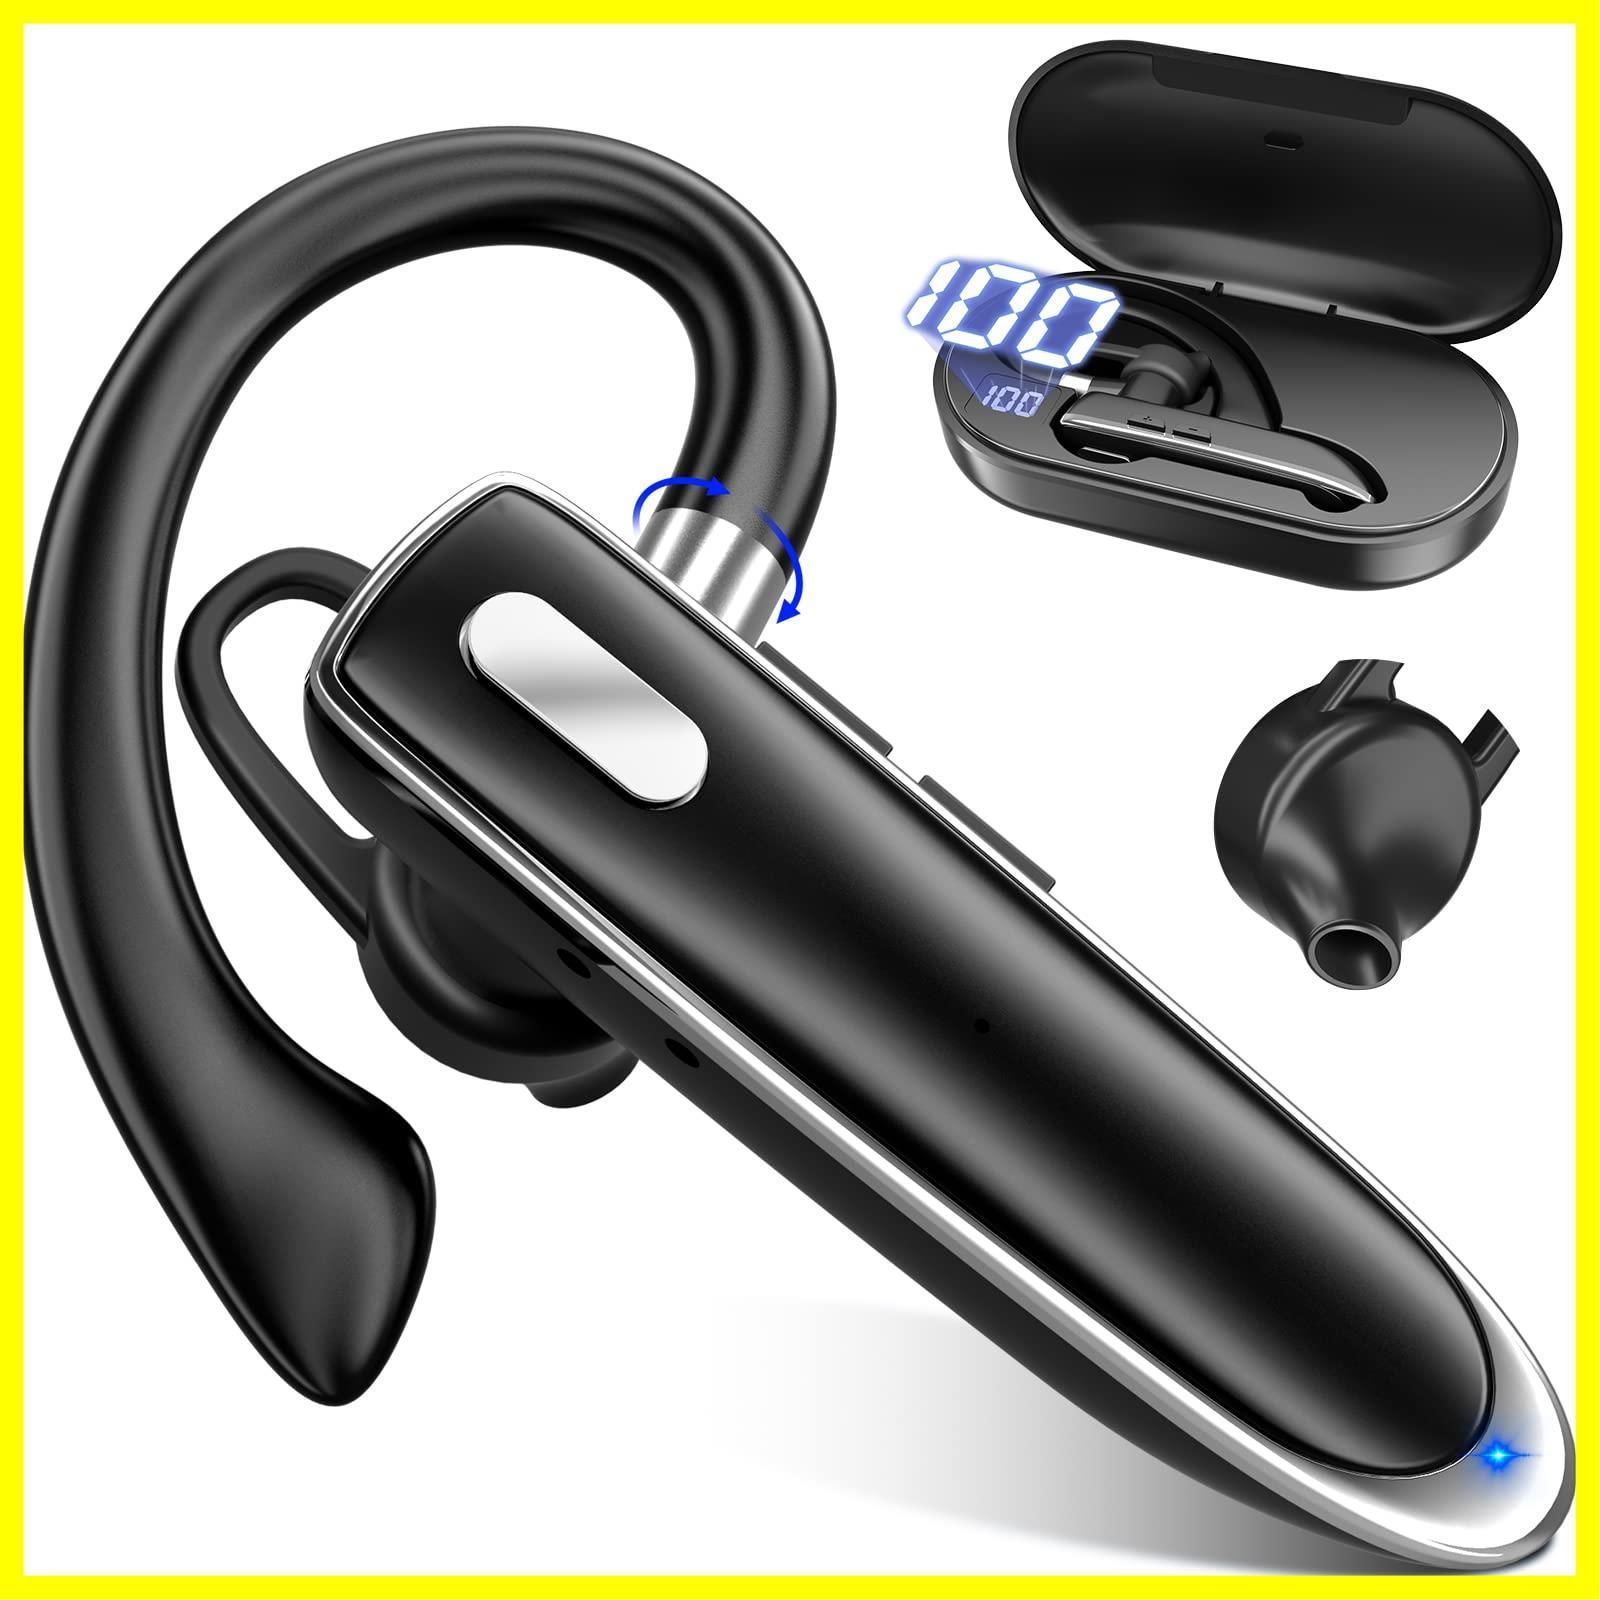 耳掛け式 片耳イヤホン ブルートゥースイヤホン bluetooth 最大96時間連続使用 片耳 800mAh充電ケース付 ワイヤレスイヤホン  Bluetoothイヤホン LEDディスプレイ 左右耳兼用 Bluetoothヘッドセット AAC対応 ハンズフリー通 